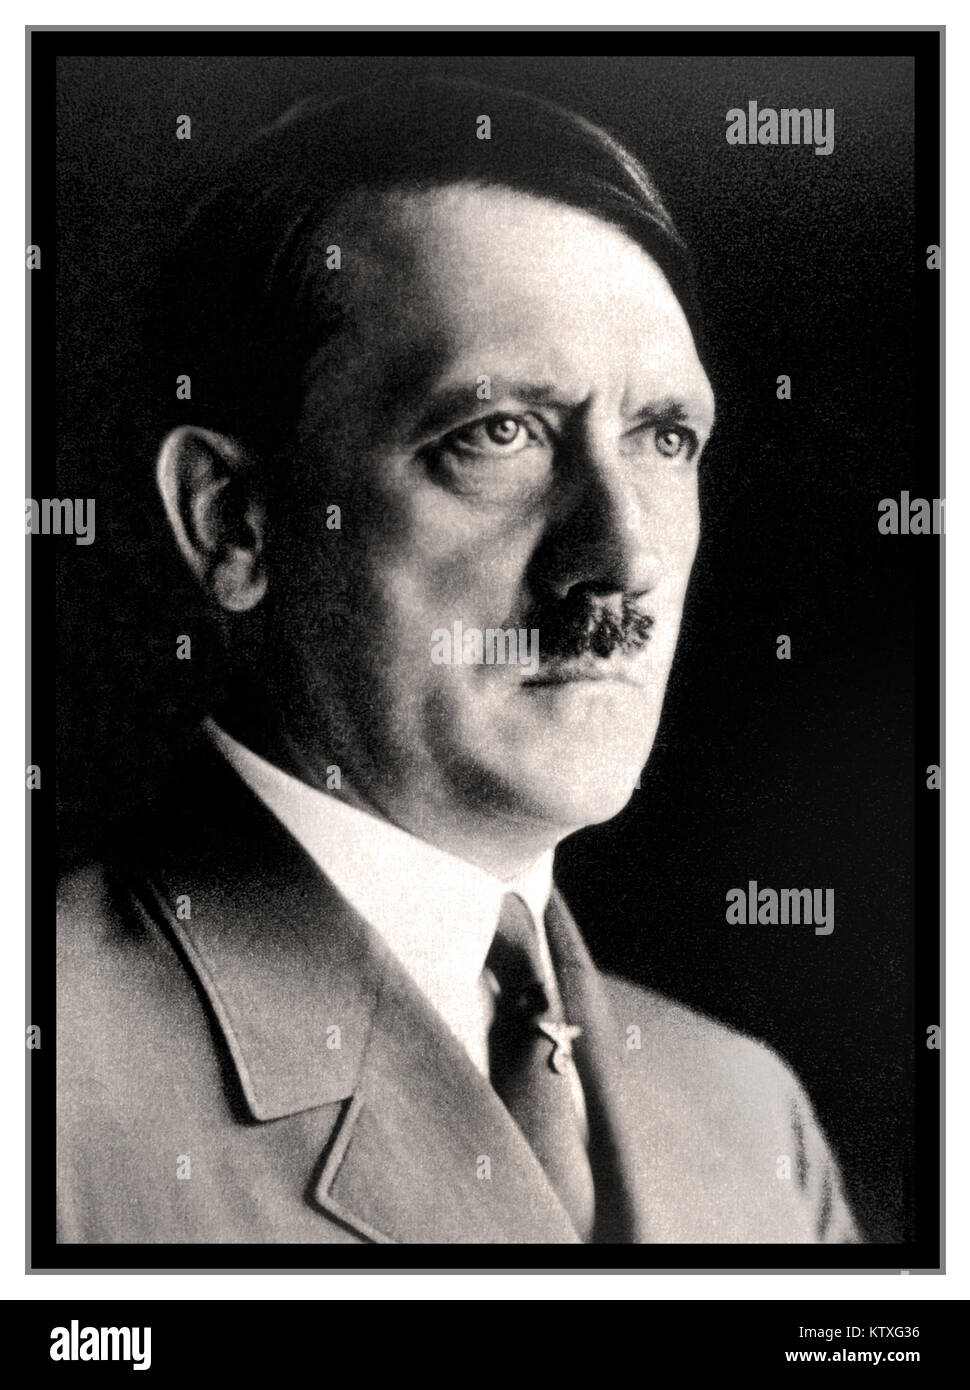 PORTRAIT D'ADOLF HITLER le studio B&W des années 1930 posa la tête et l'épaule portrait photographie d'Adolf Hitler en uniforme par le photographe personnel de Heinrich Hoffman Hitler (également ID: 2F9G747) Banque D'Images